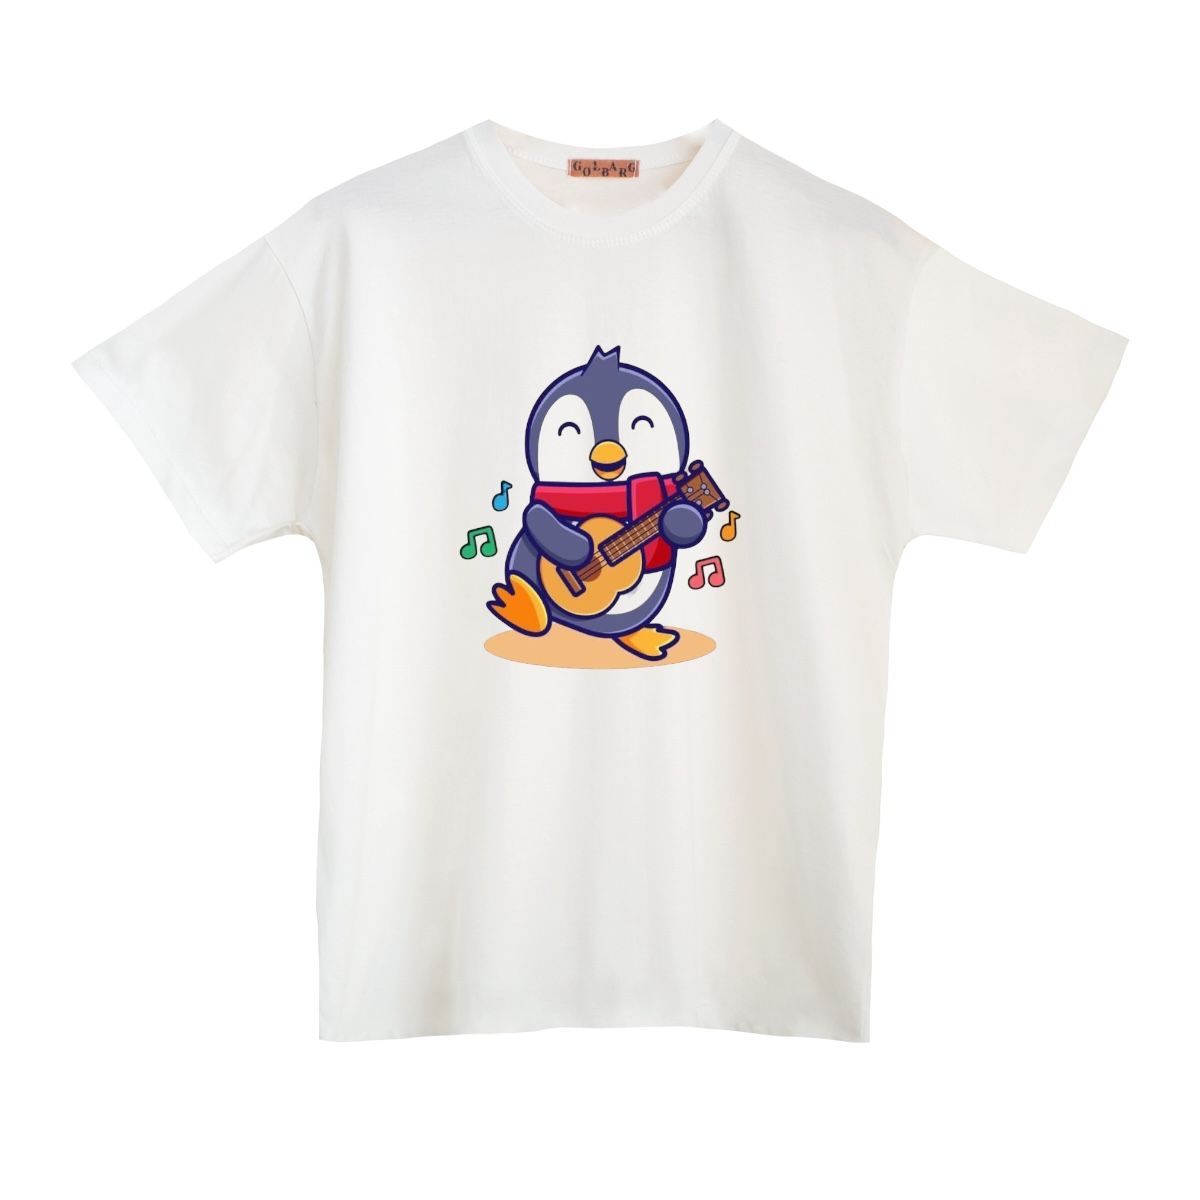 تی شرت بچگانه مدل پنگوئن کد 11 -  - 1